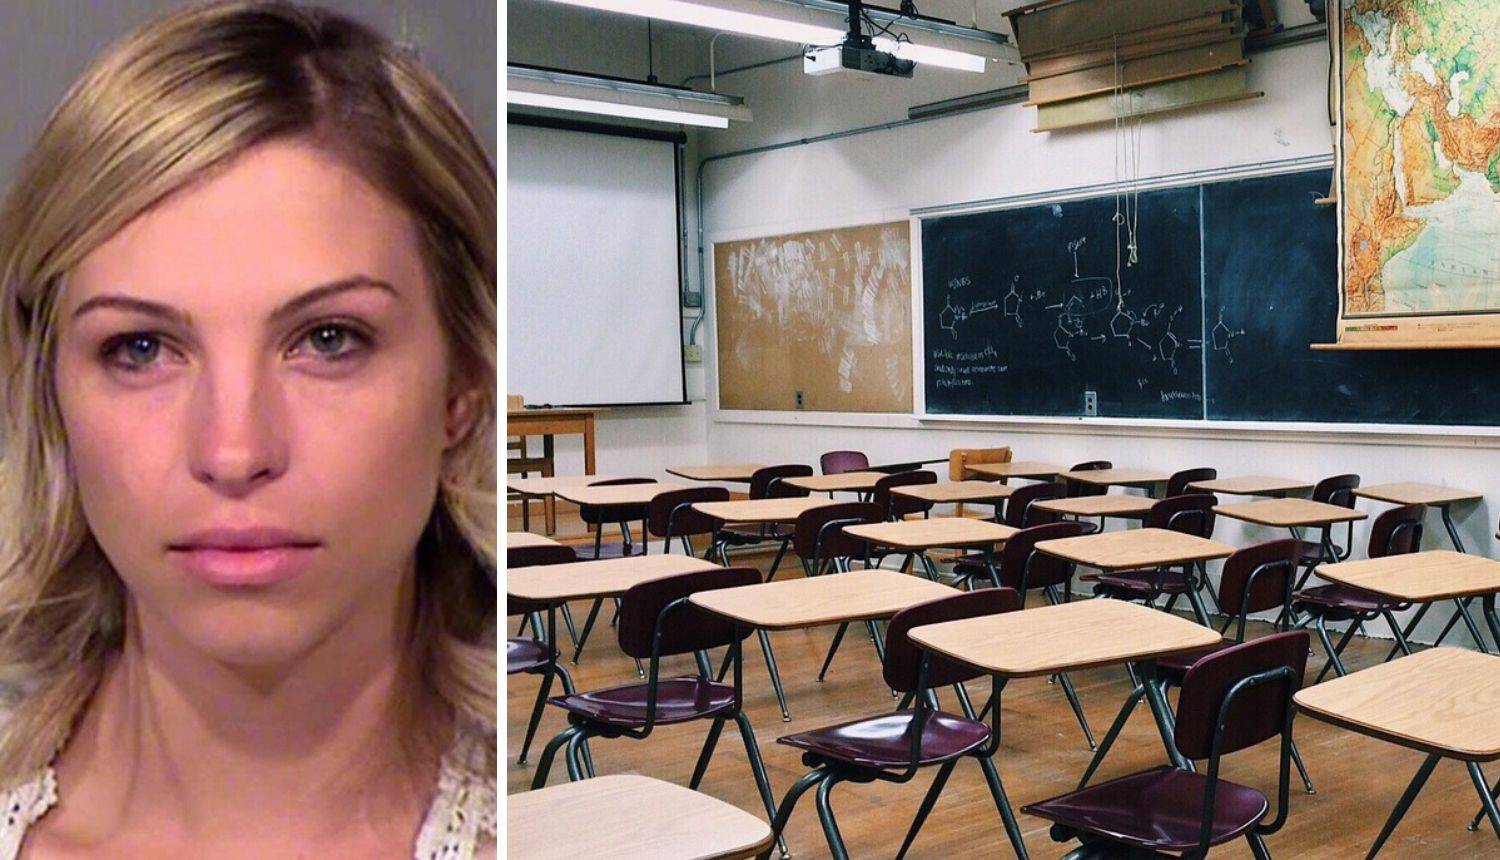 Učiteljica spavala s učenikom, dok je drugi morao 'stražariti'